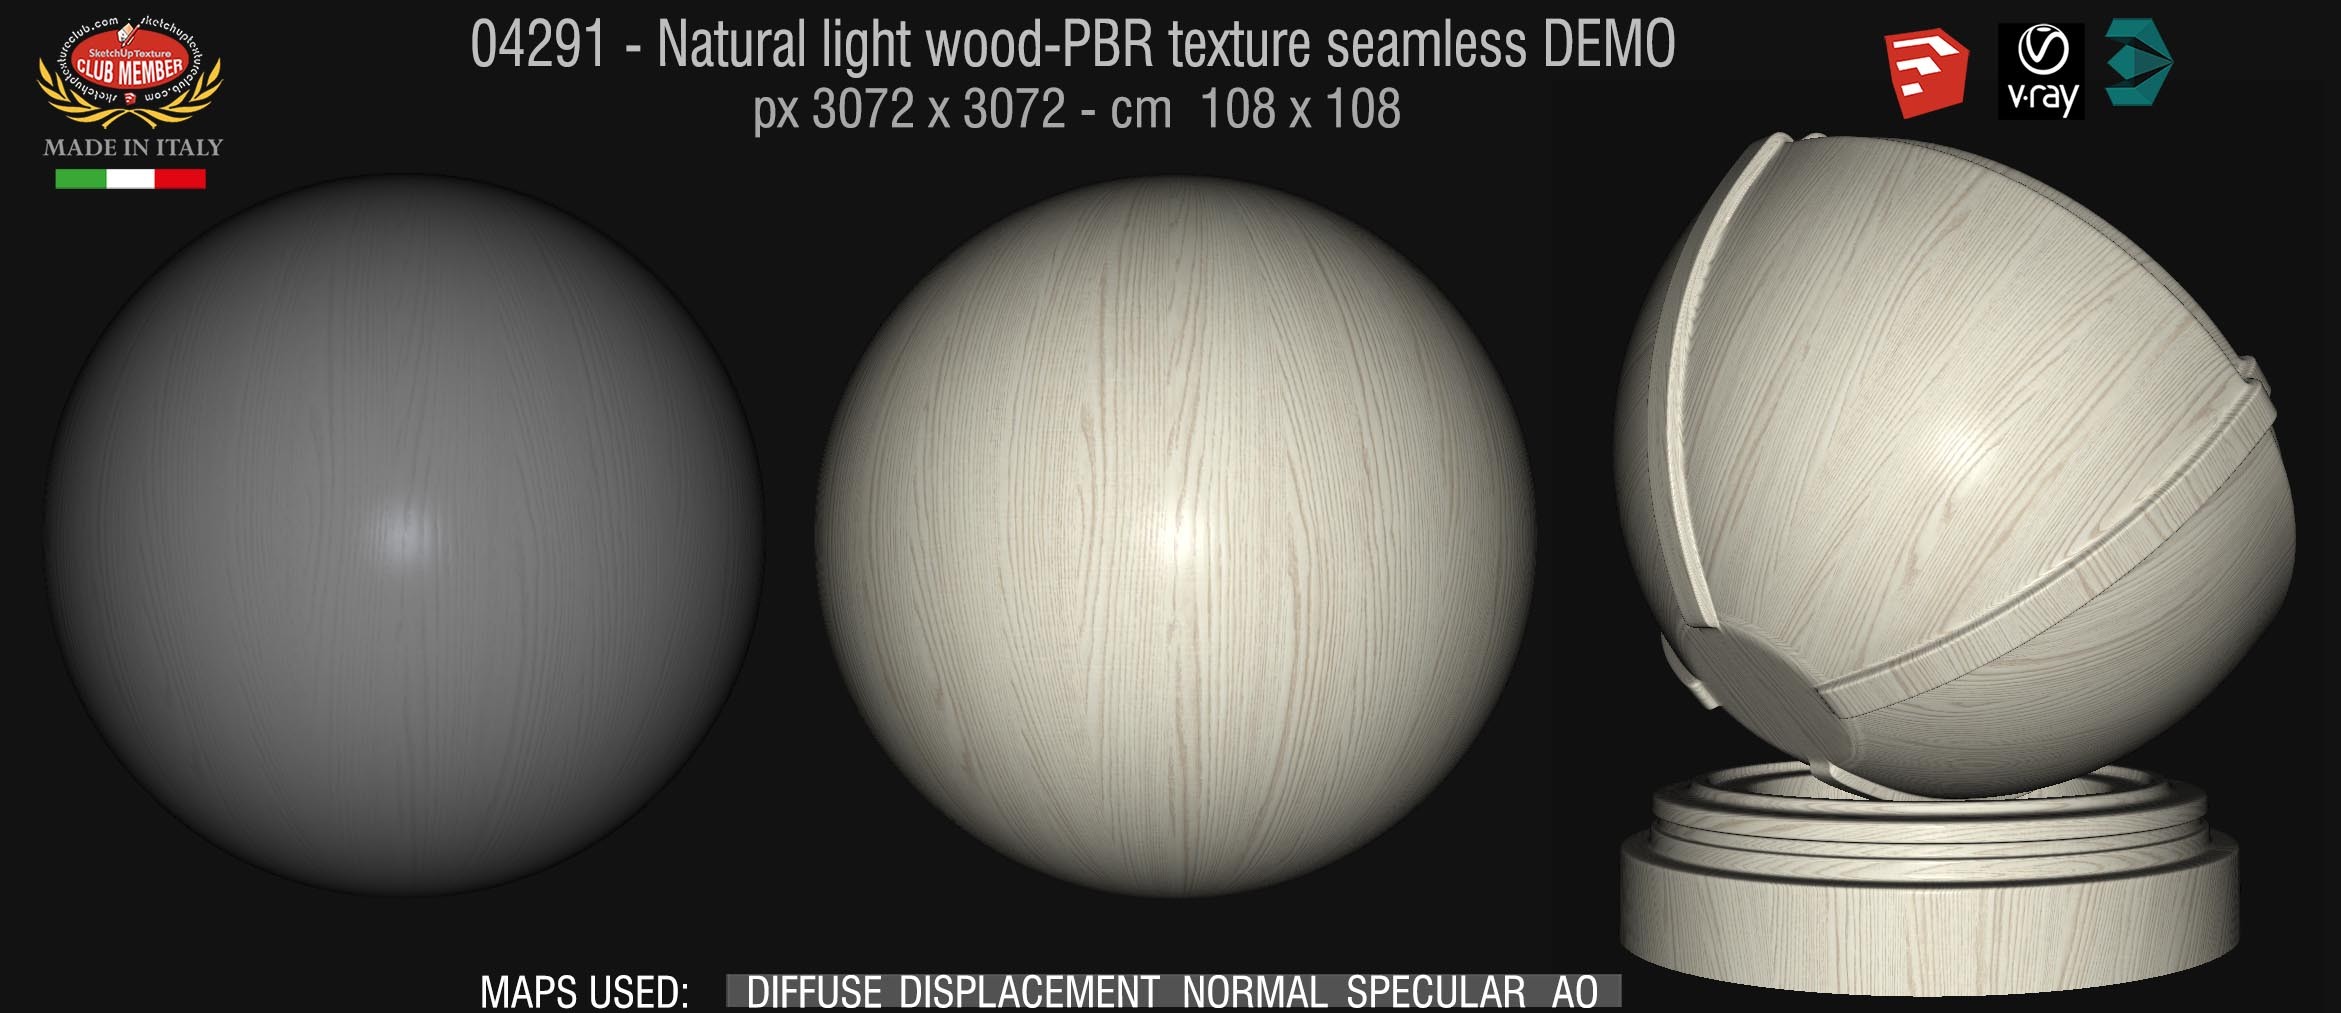 04291 Natural light wood-PBR texture seamless DEMO